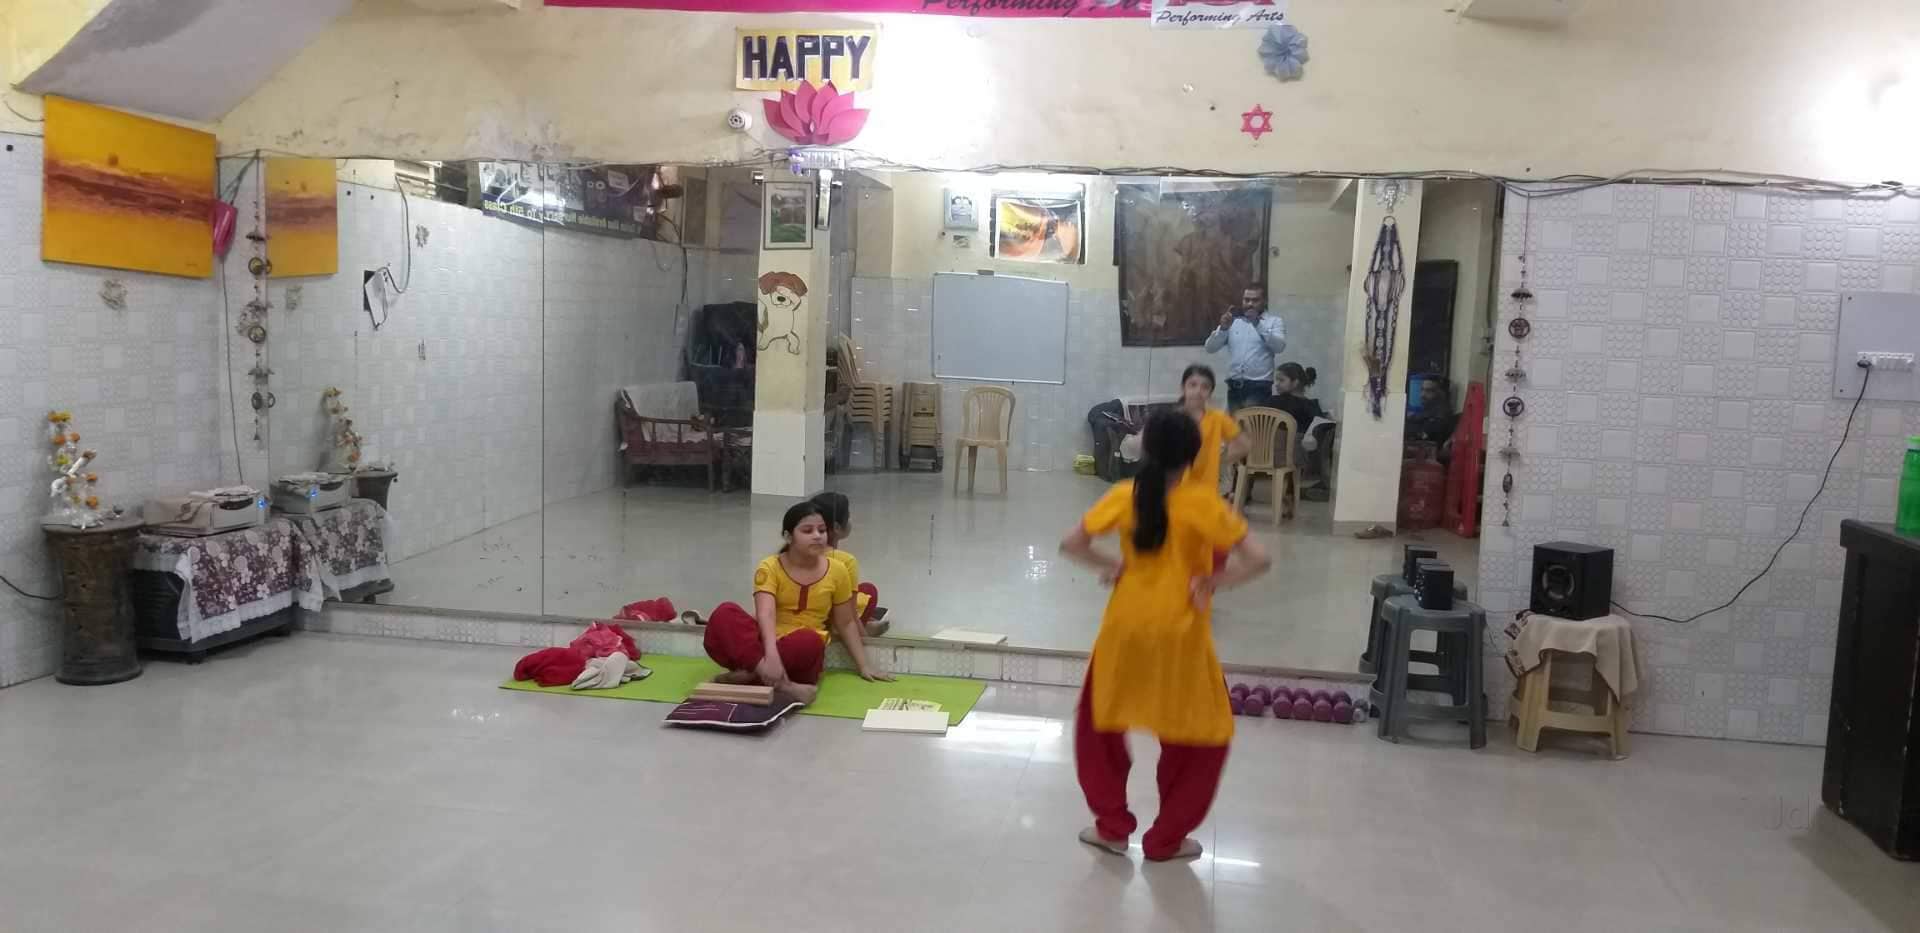 Delhi Queen Dance Studio - ClassDigest.com - Find best preschools ...